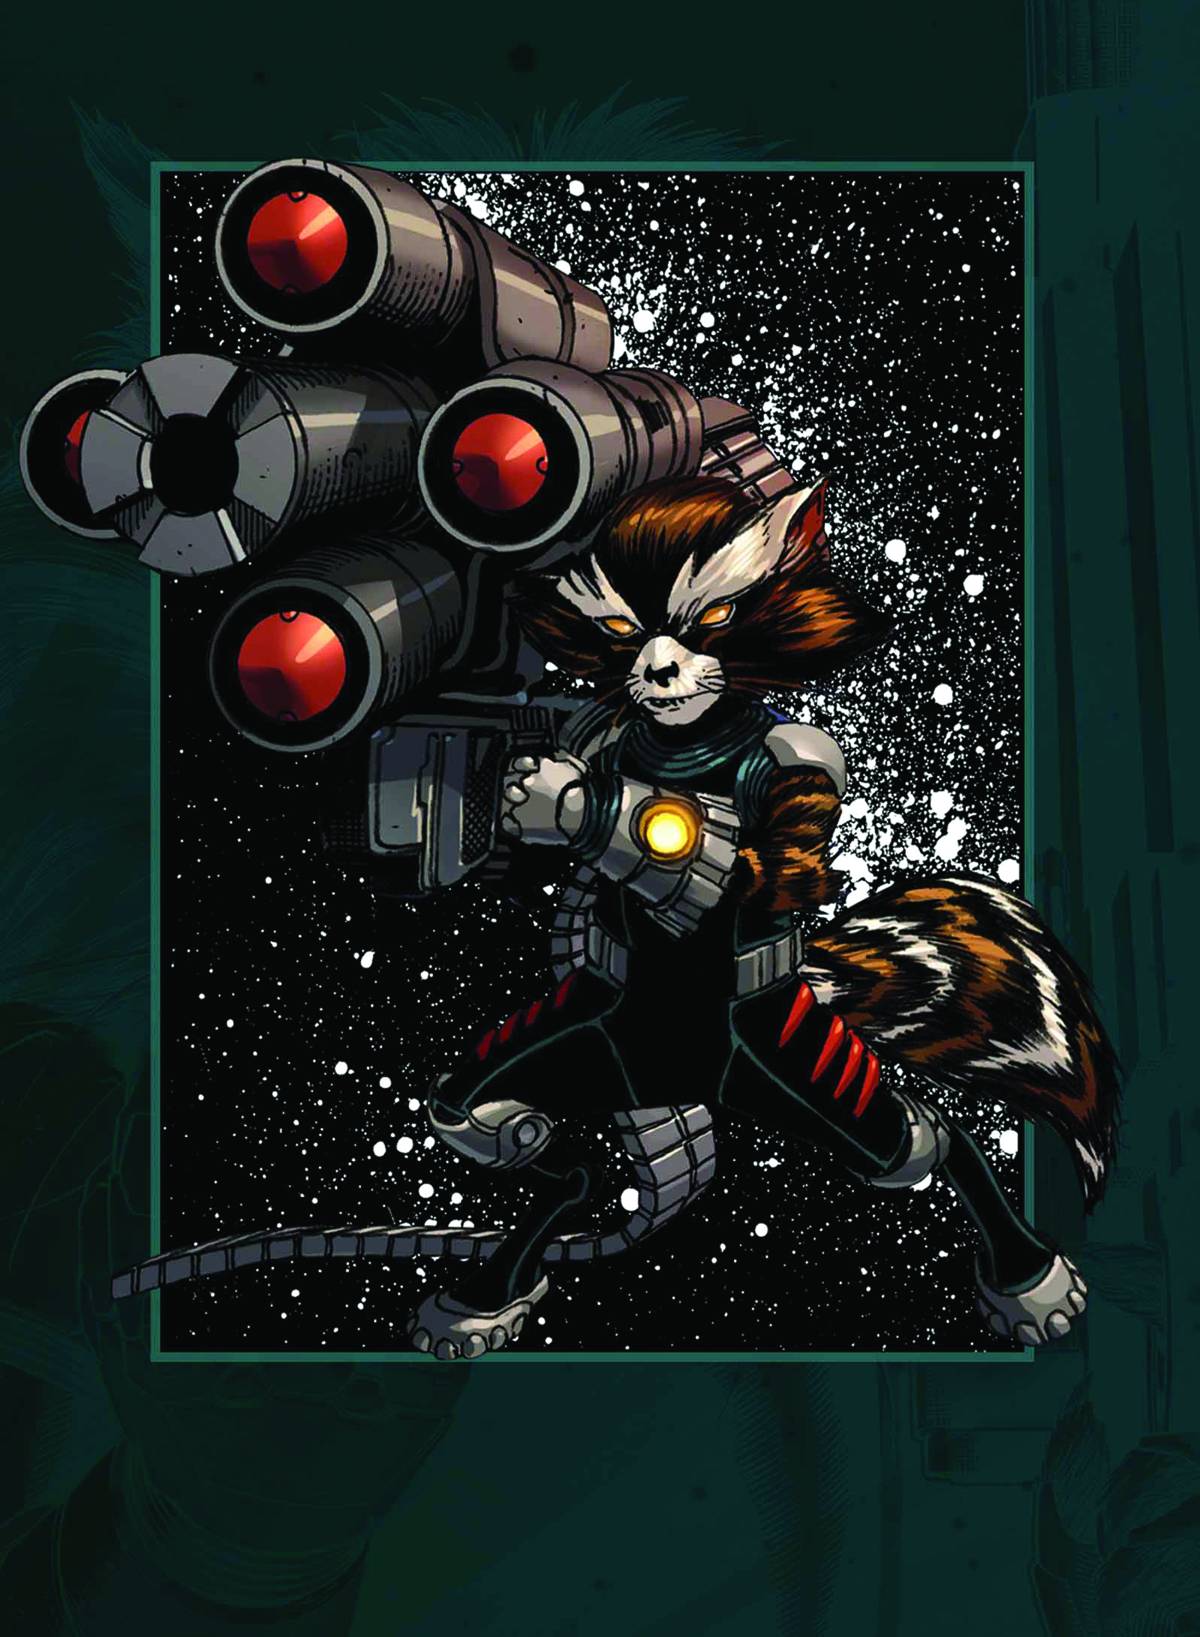 Rocket Raccoon Tales From Half-World #1 (2013)